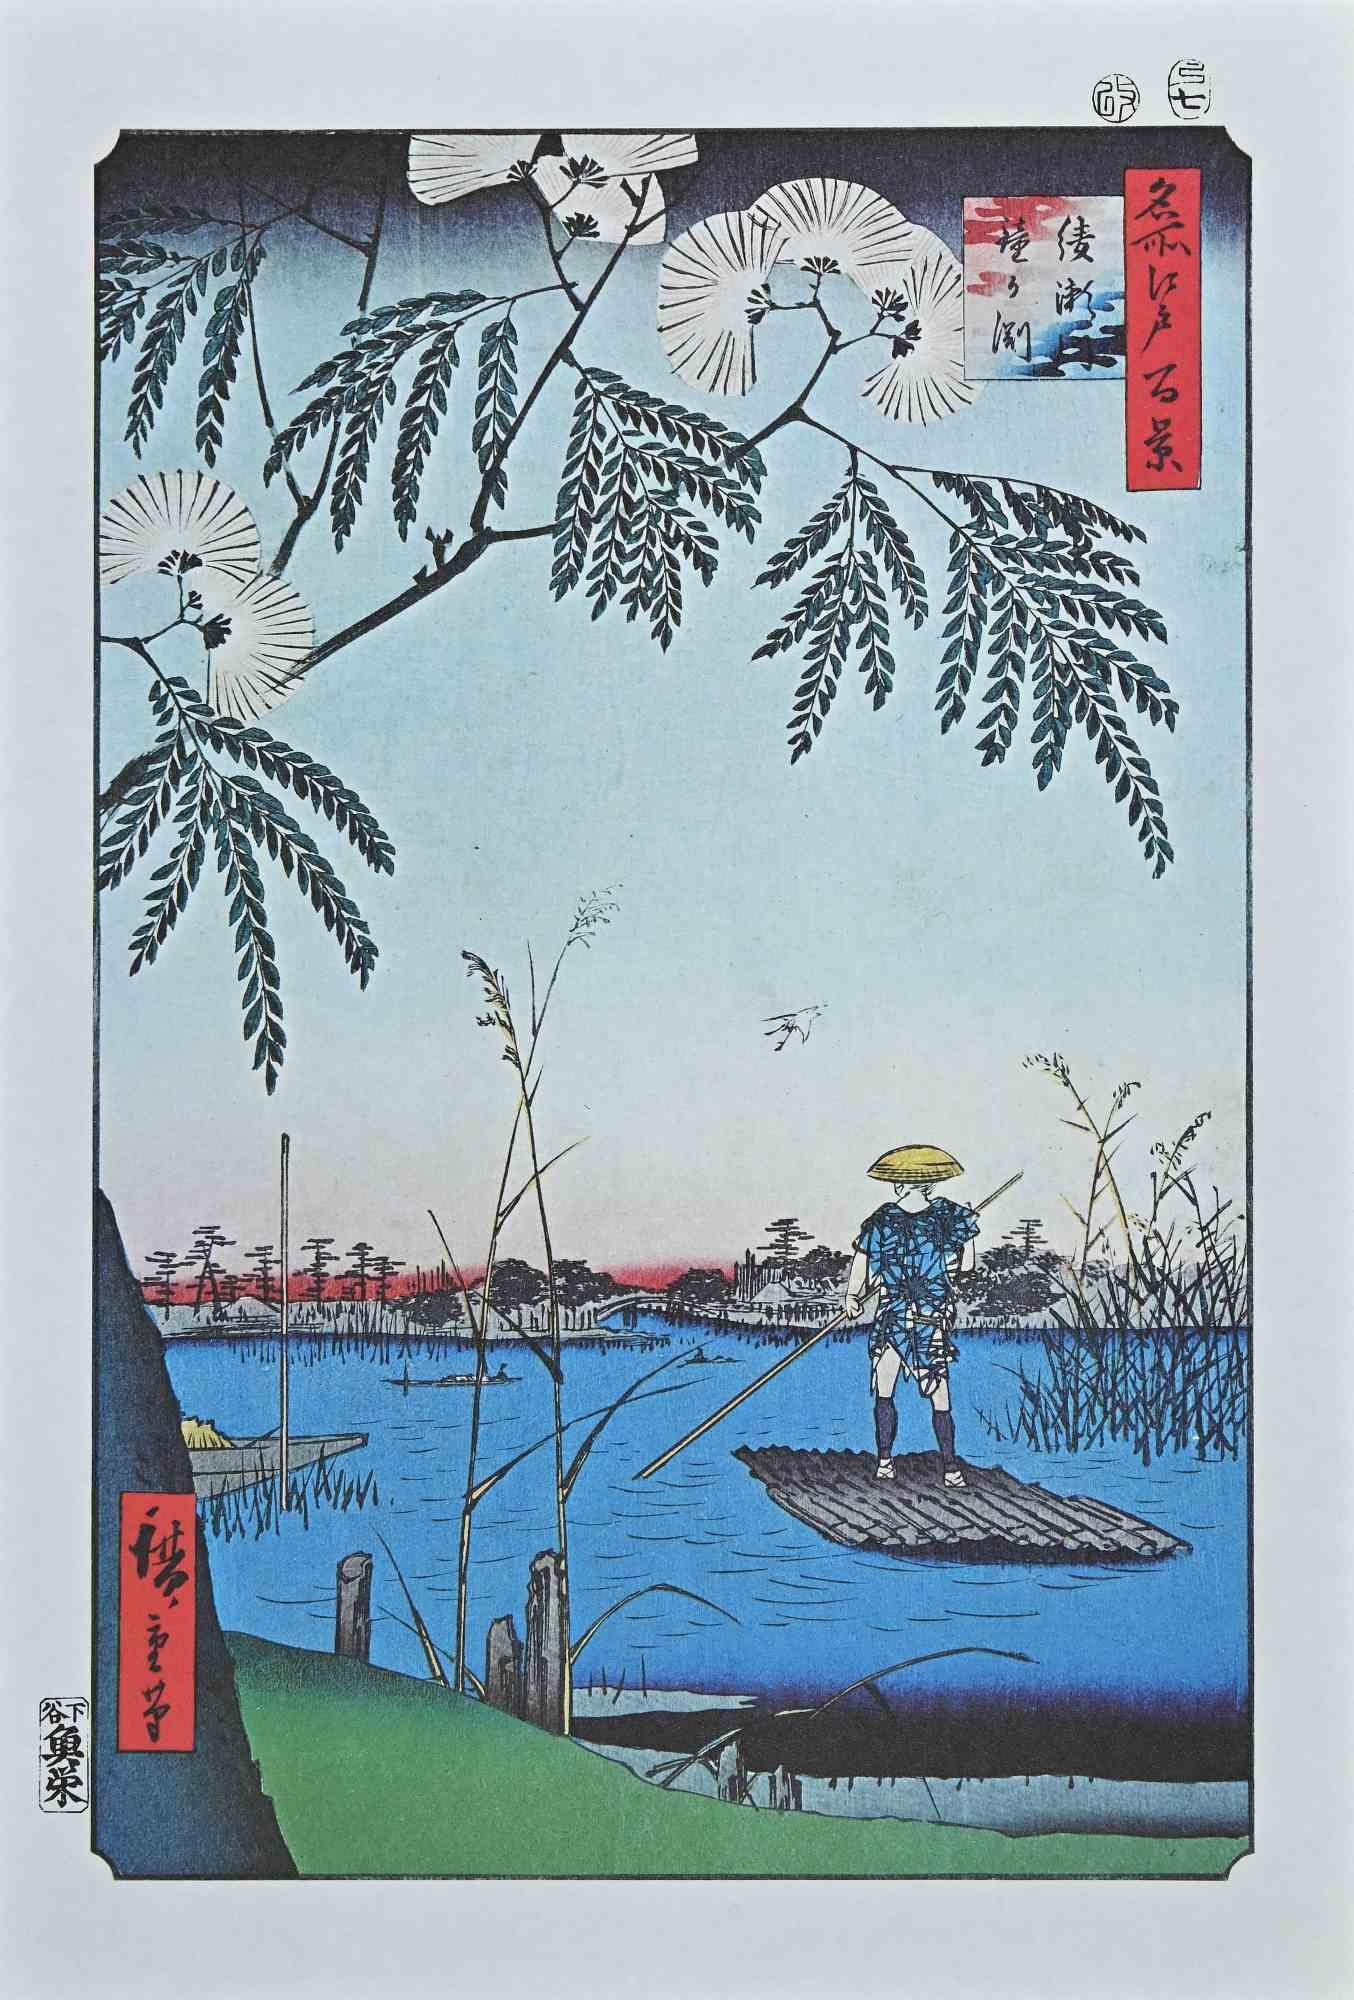 Ayase und Kanegafuchi River ist ein modernes Kunstwerk, das Mitte des 20. Jahrhunderts nach Utagawa Hiroshige entstand.

Mischkolorierte Lithografie nach einem Holzschnitt von Utagawa Hiroshige aus dem Jahr 1857 aus der Serie "Meisho Edo Hyakkei"